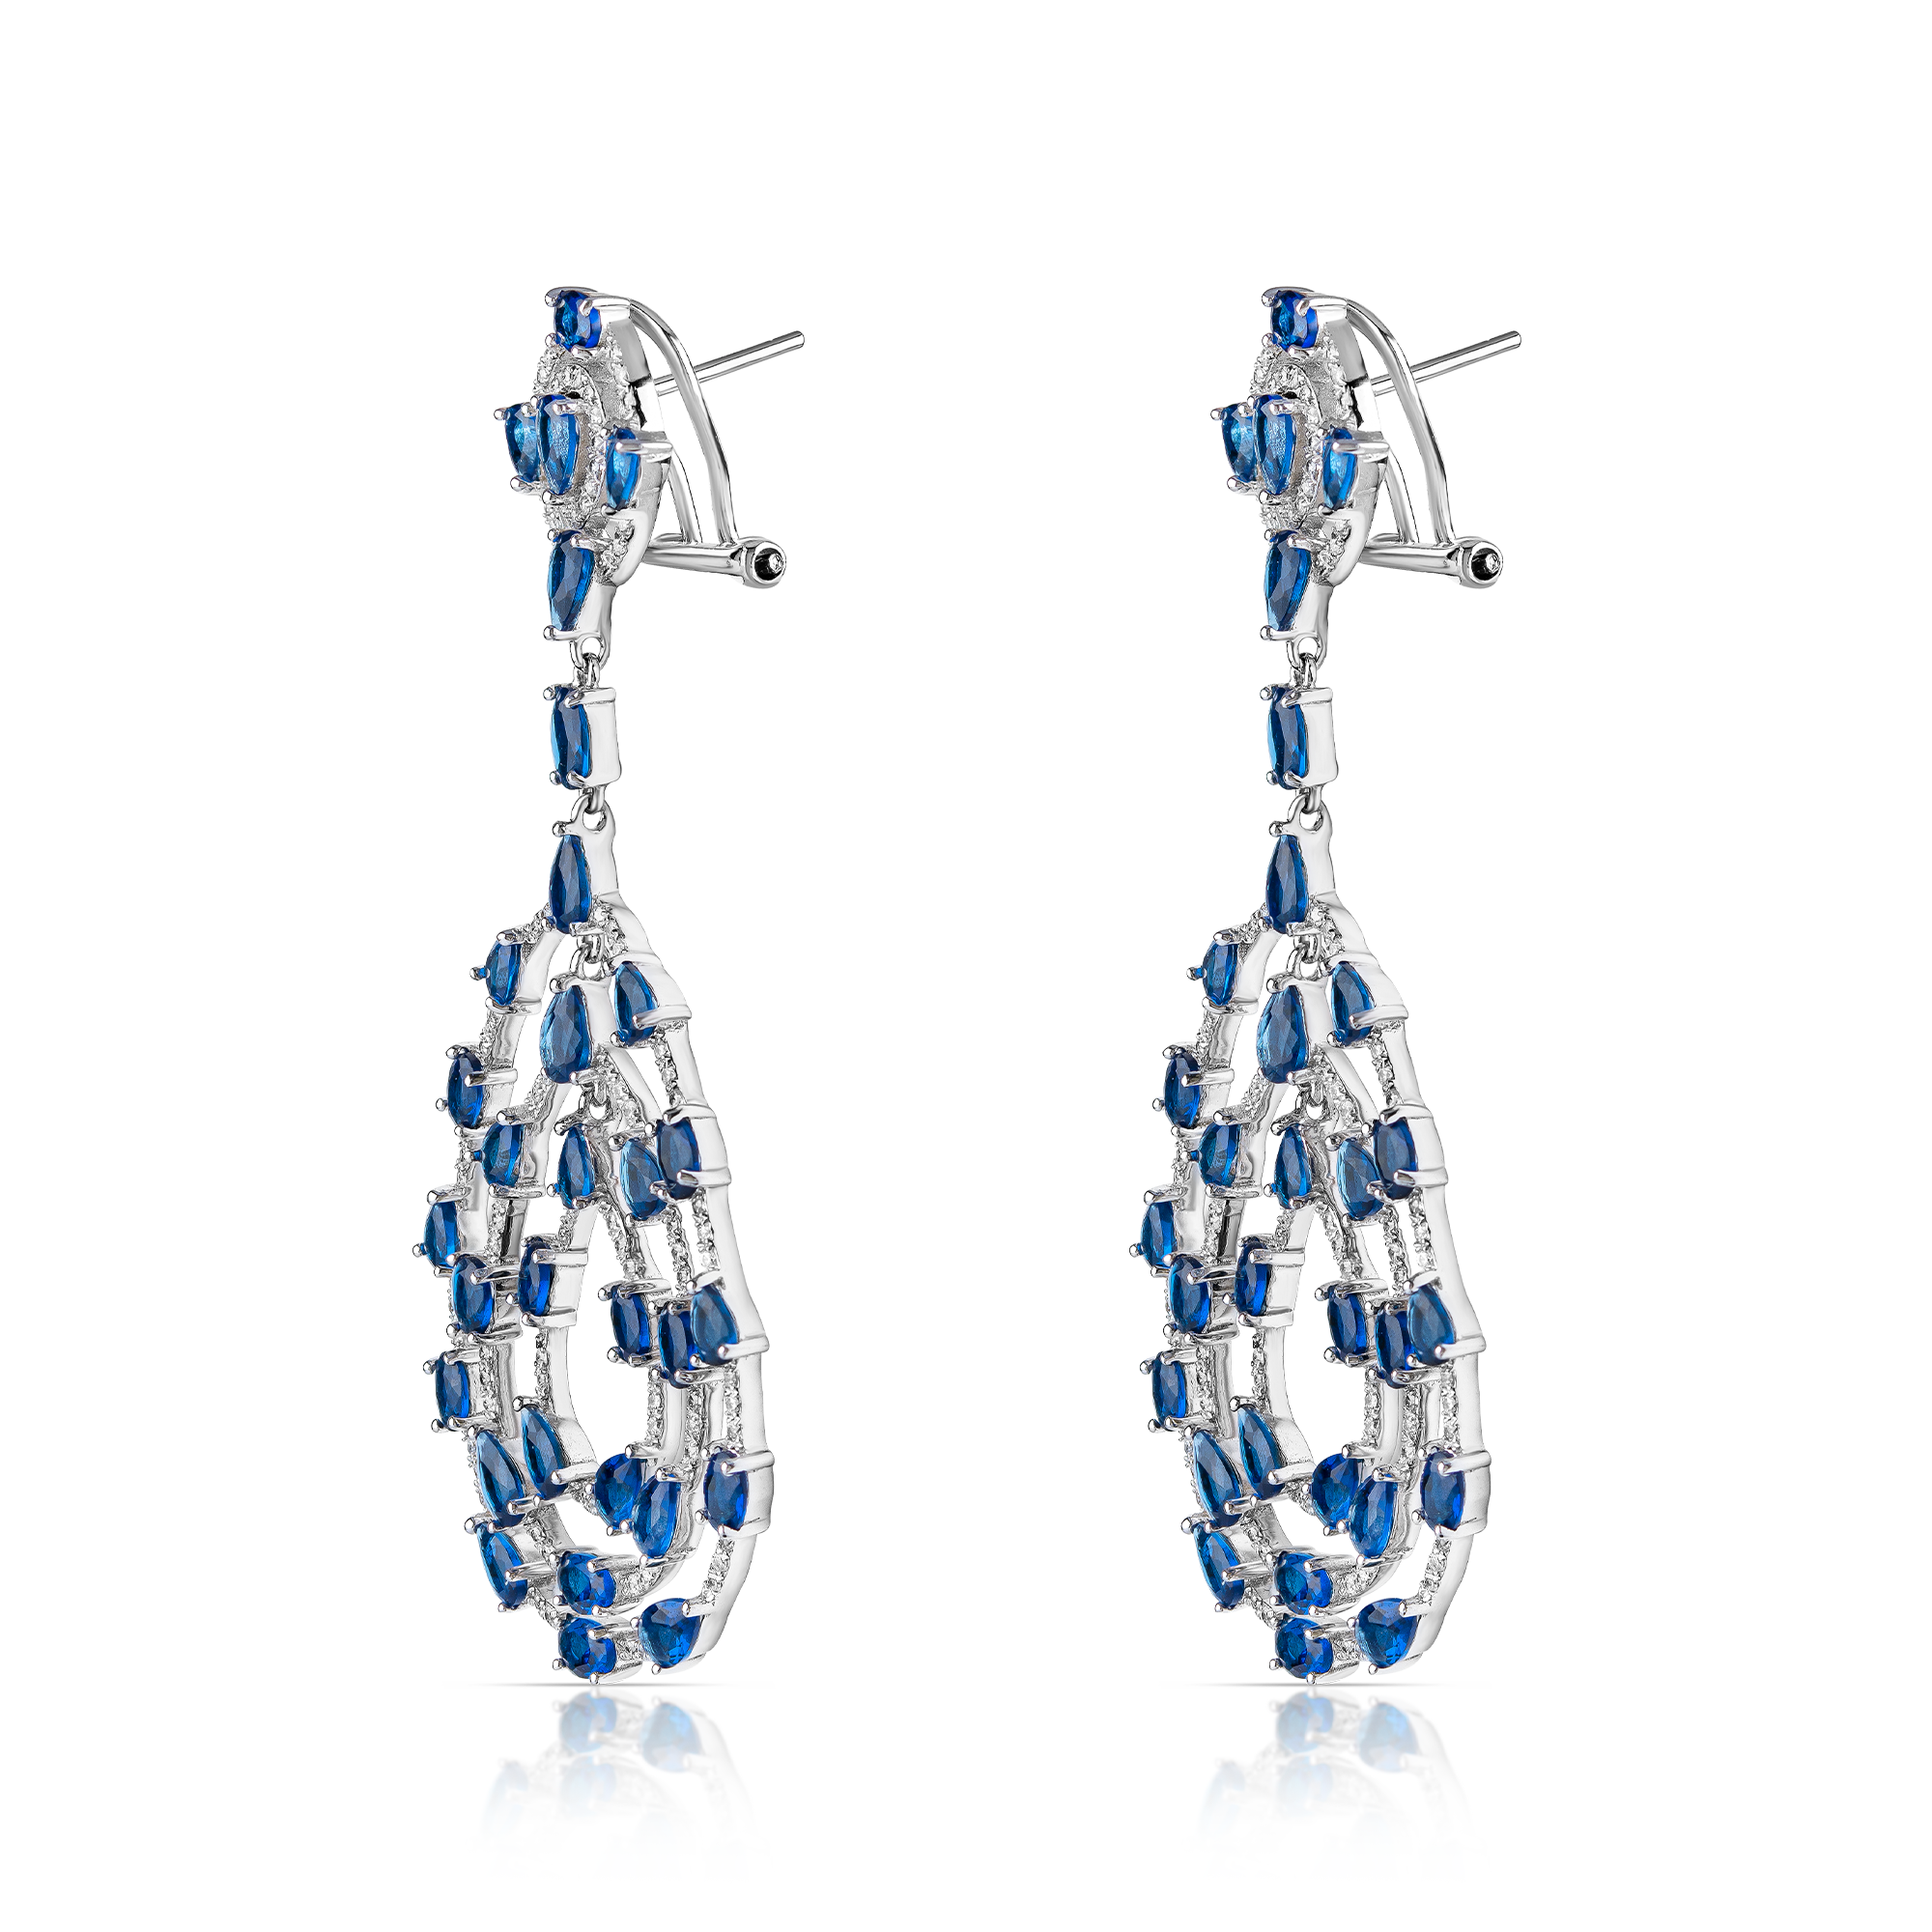 wild blue yonder earrings